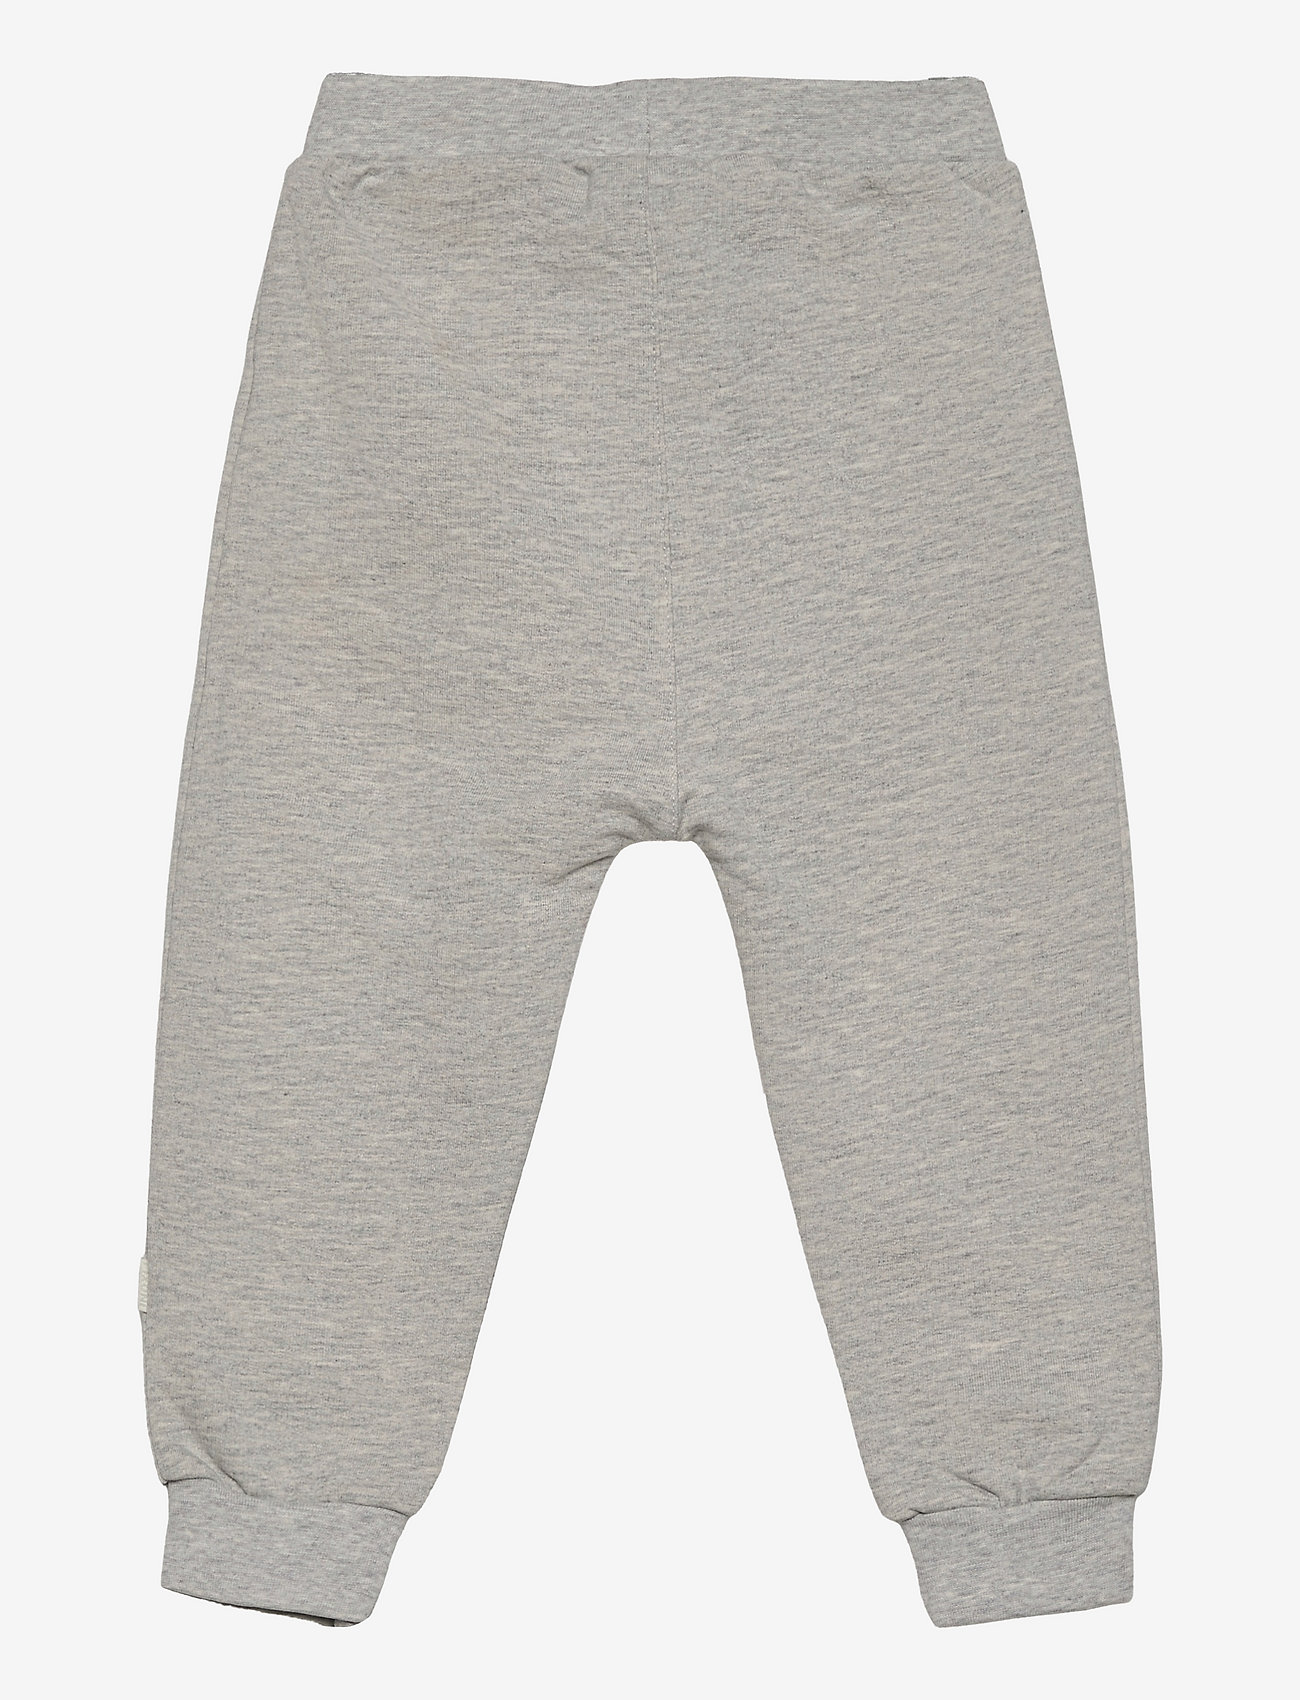 Fixoni - Pants - Unisex - pantalon pour bébé - grey melange - 1